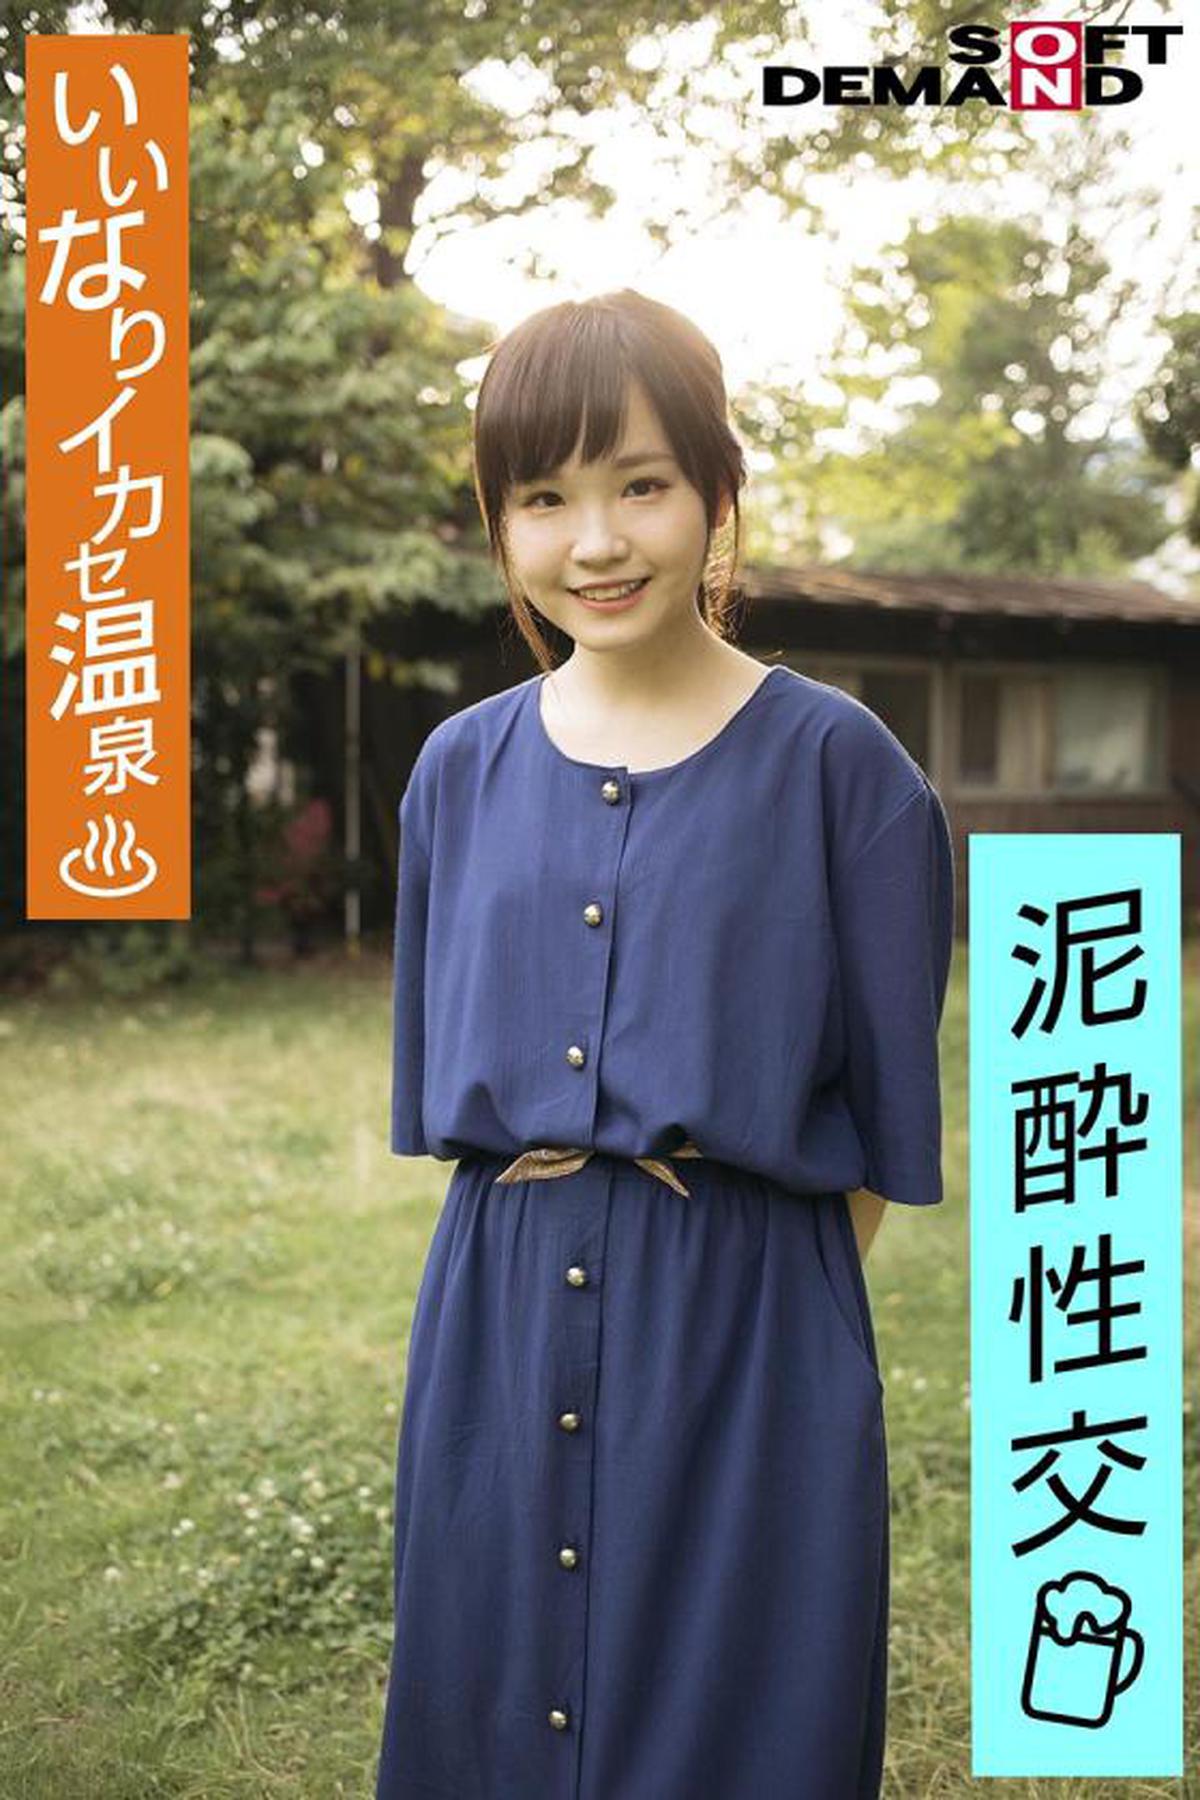 107EMOI-030 Emo Girl / Gefälliges Ikase Onsen / Betrunkener Sex / Nyotaimori / Sake / Kurze Größe 142cm / Osaka Dialekt / Haru-chan (20) Haru Ito